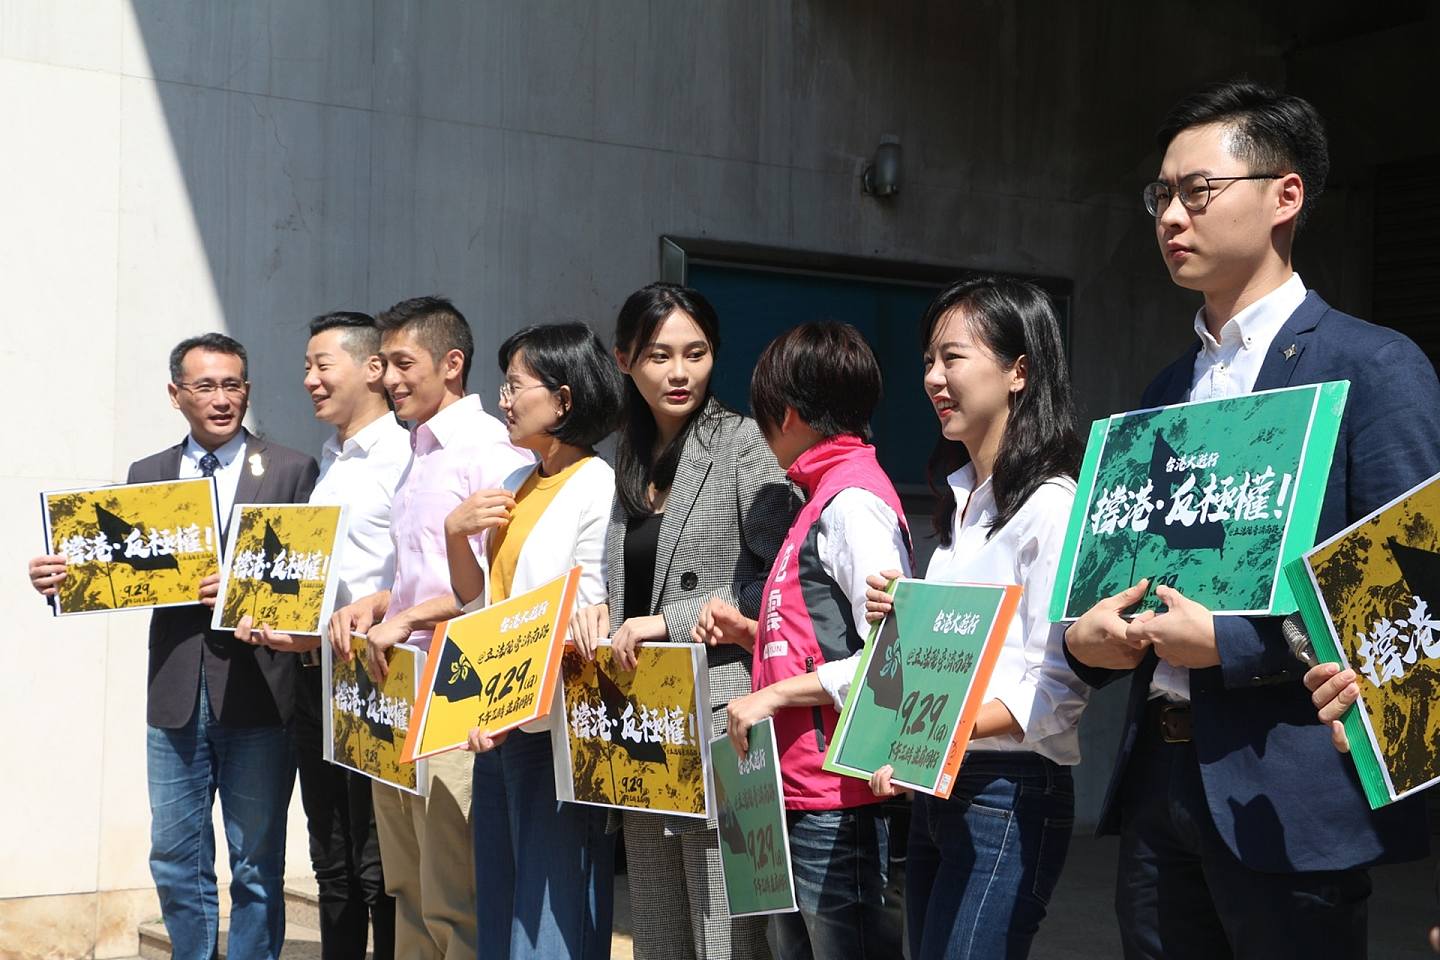 2019年9月29日由台湾民间团体举办的“台港大游行”，受到泛绿立委参选人的公开支持。（谭英瑛／多维新闻）